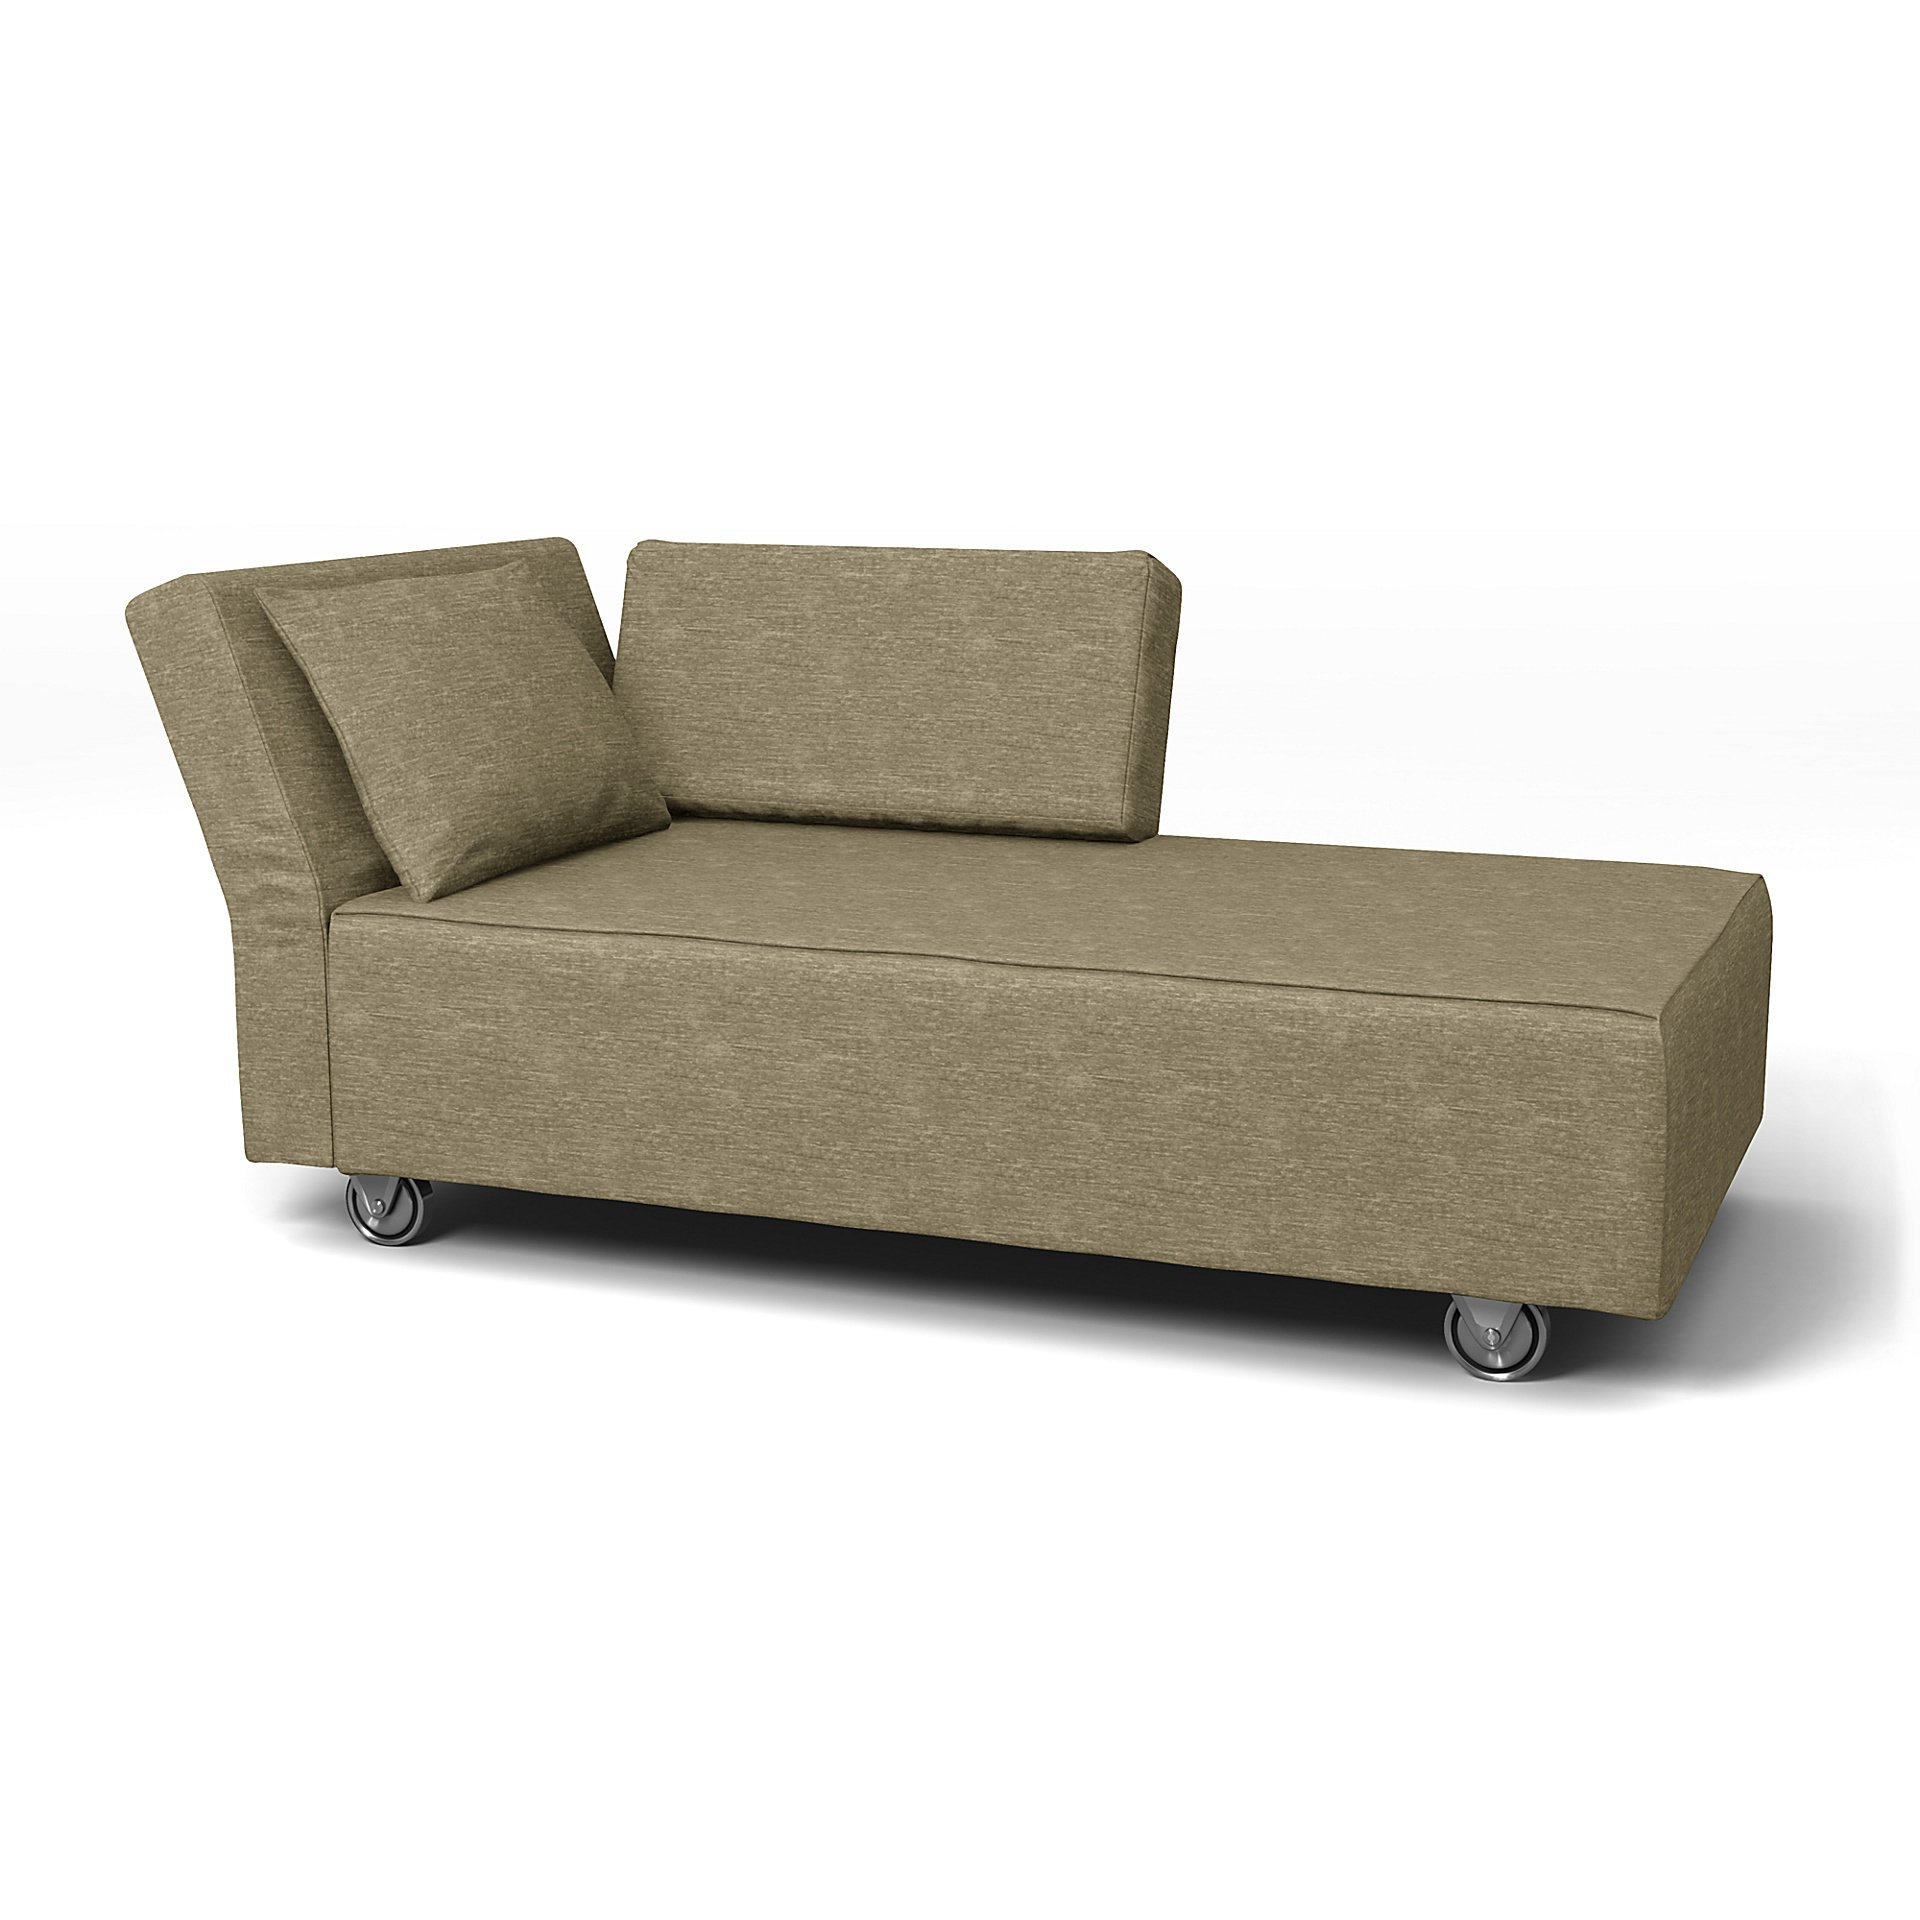 IKEA - Falsterbo Chaise with Left Armrest Cover, Beige, Velvet - Bemz